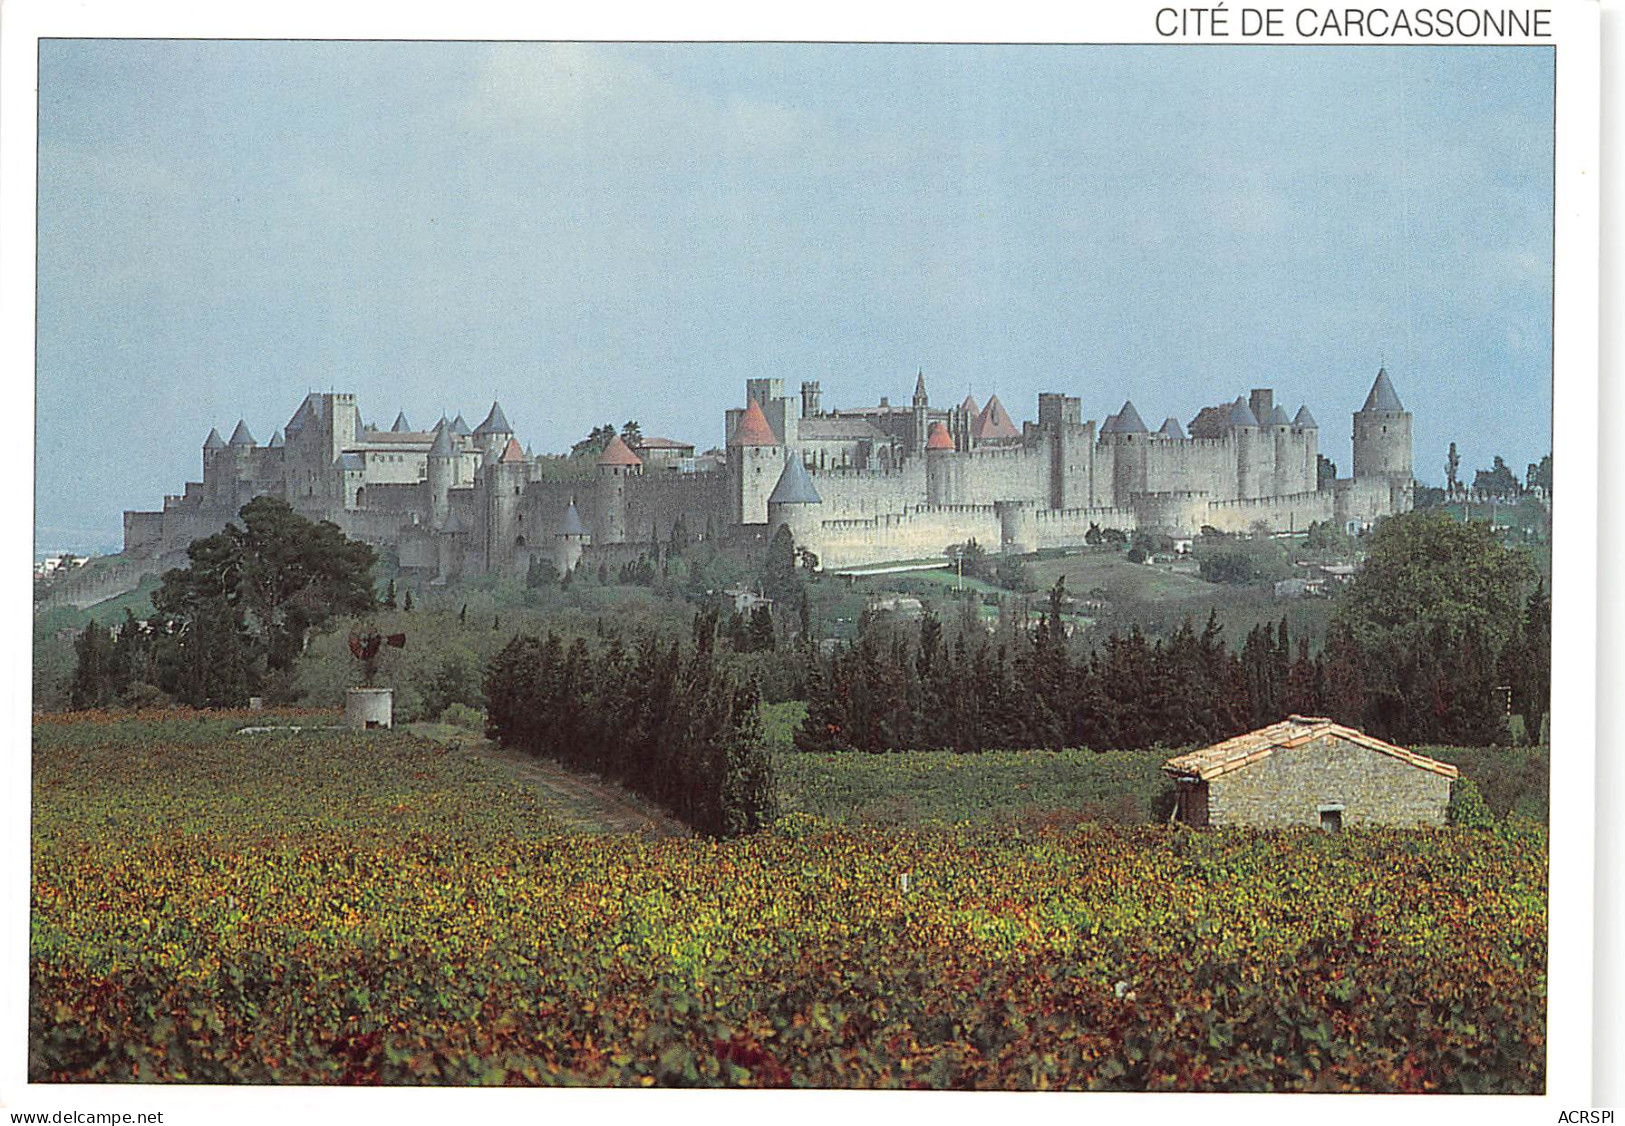 CITE DE CARCASSONNE Vue Des Flancs Sud Et Ouest De La Cite Medievale 25(scan Recto-verso) MB2345 - Carcassonne